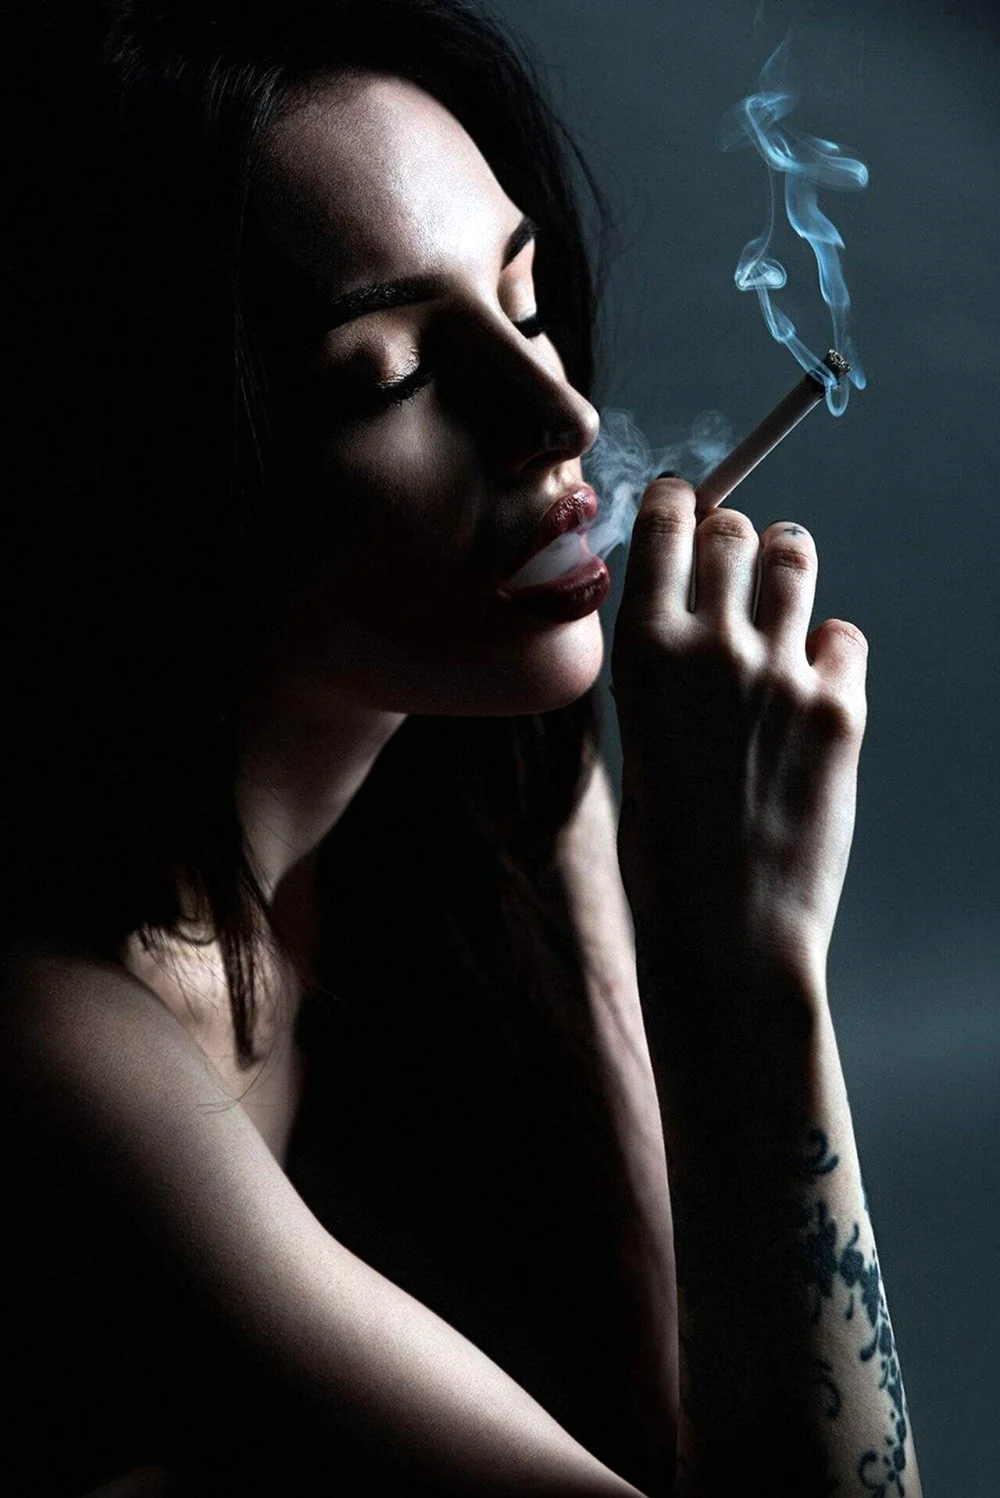 Девушка с сигаретой